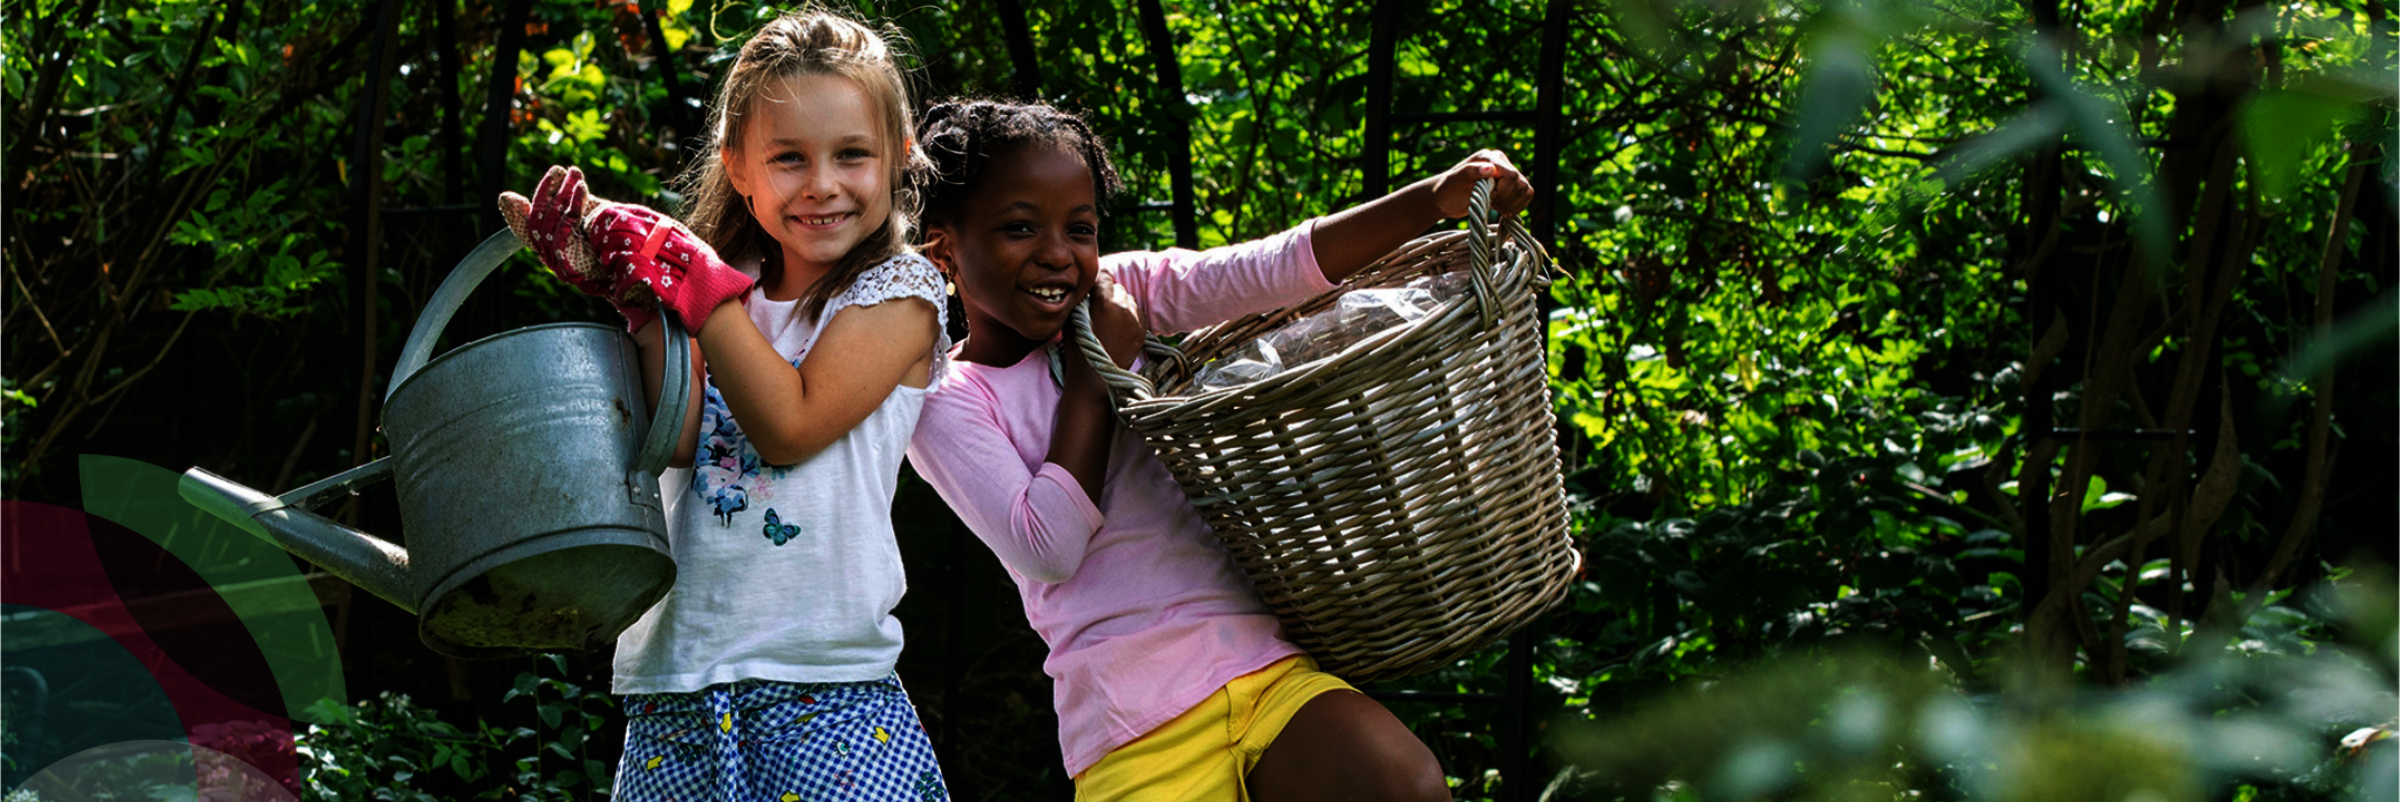 Twee meisjes staan in tuin met tuingereedschap